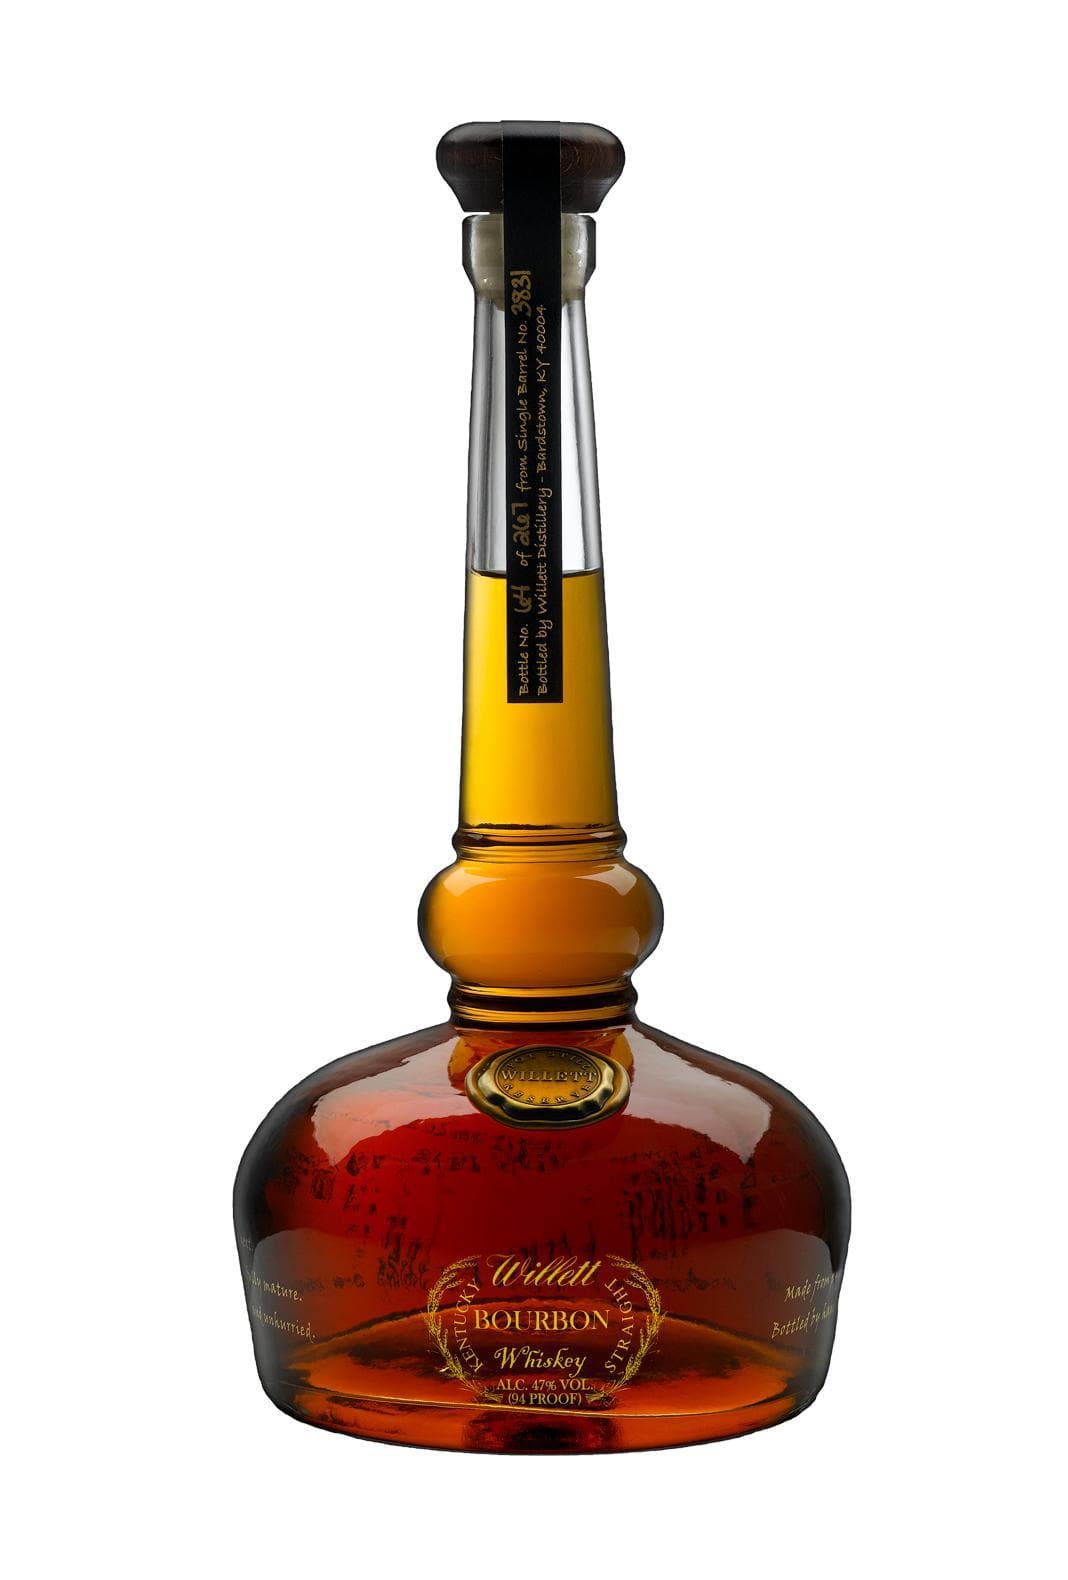 Willett Family Kentucky Straight Bourbon Whiskey Pot Still Reserve 47% 750ml | Whiskey | Shop online at Spirits of France